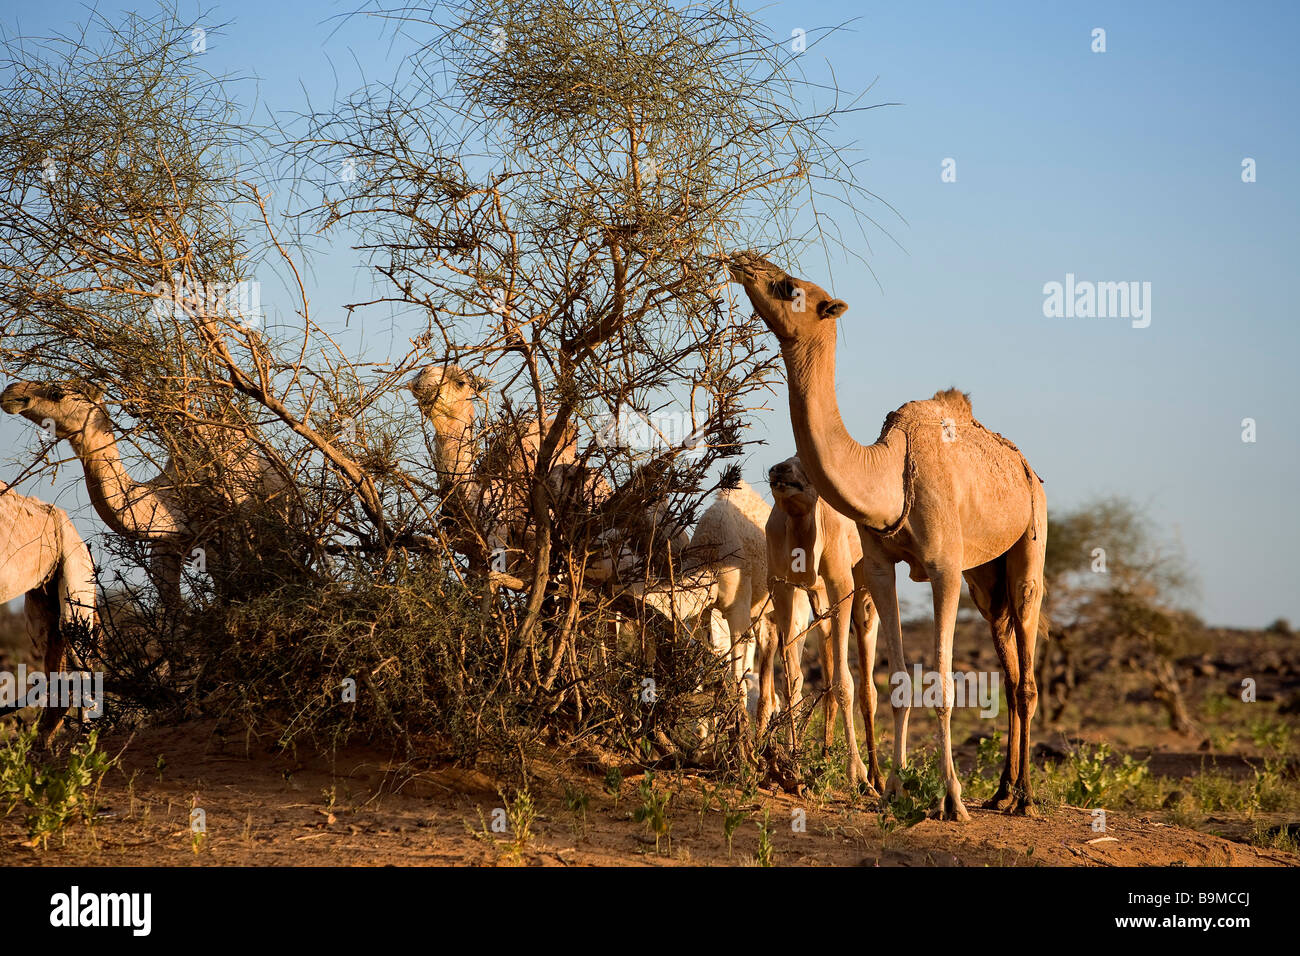 Mauritania, Adrar, Chinguetti area, Leguerara, dromadery Stock Photo